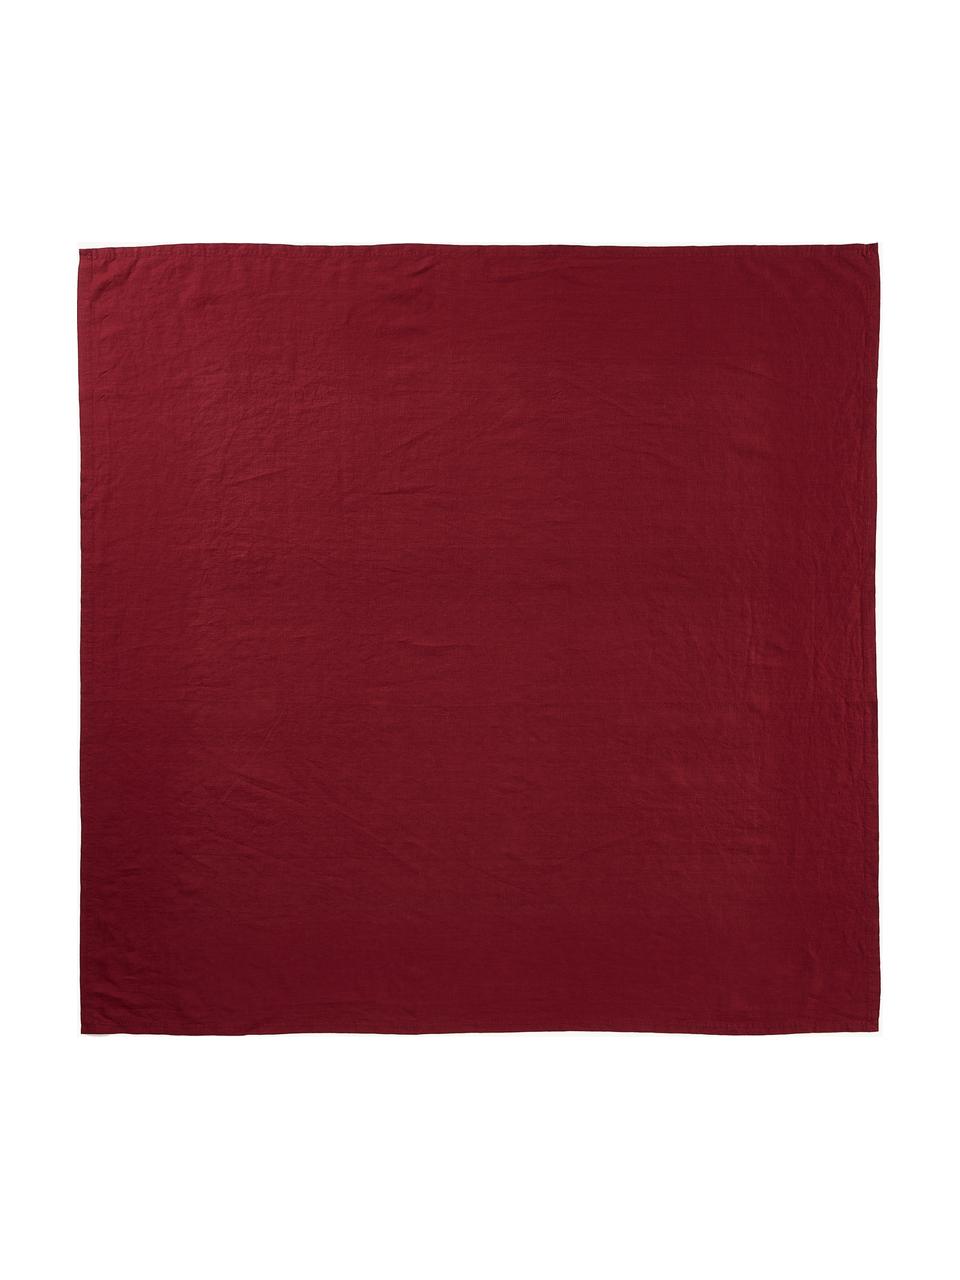 Mantel de lino Pembroke, 100% lino, Rojo, De 4 a 6 comensales (An 140 x L 140 cm)